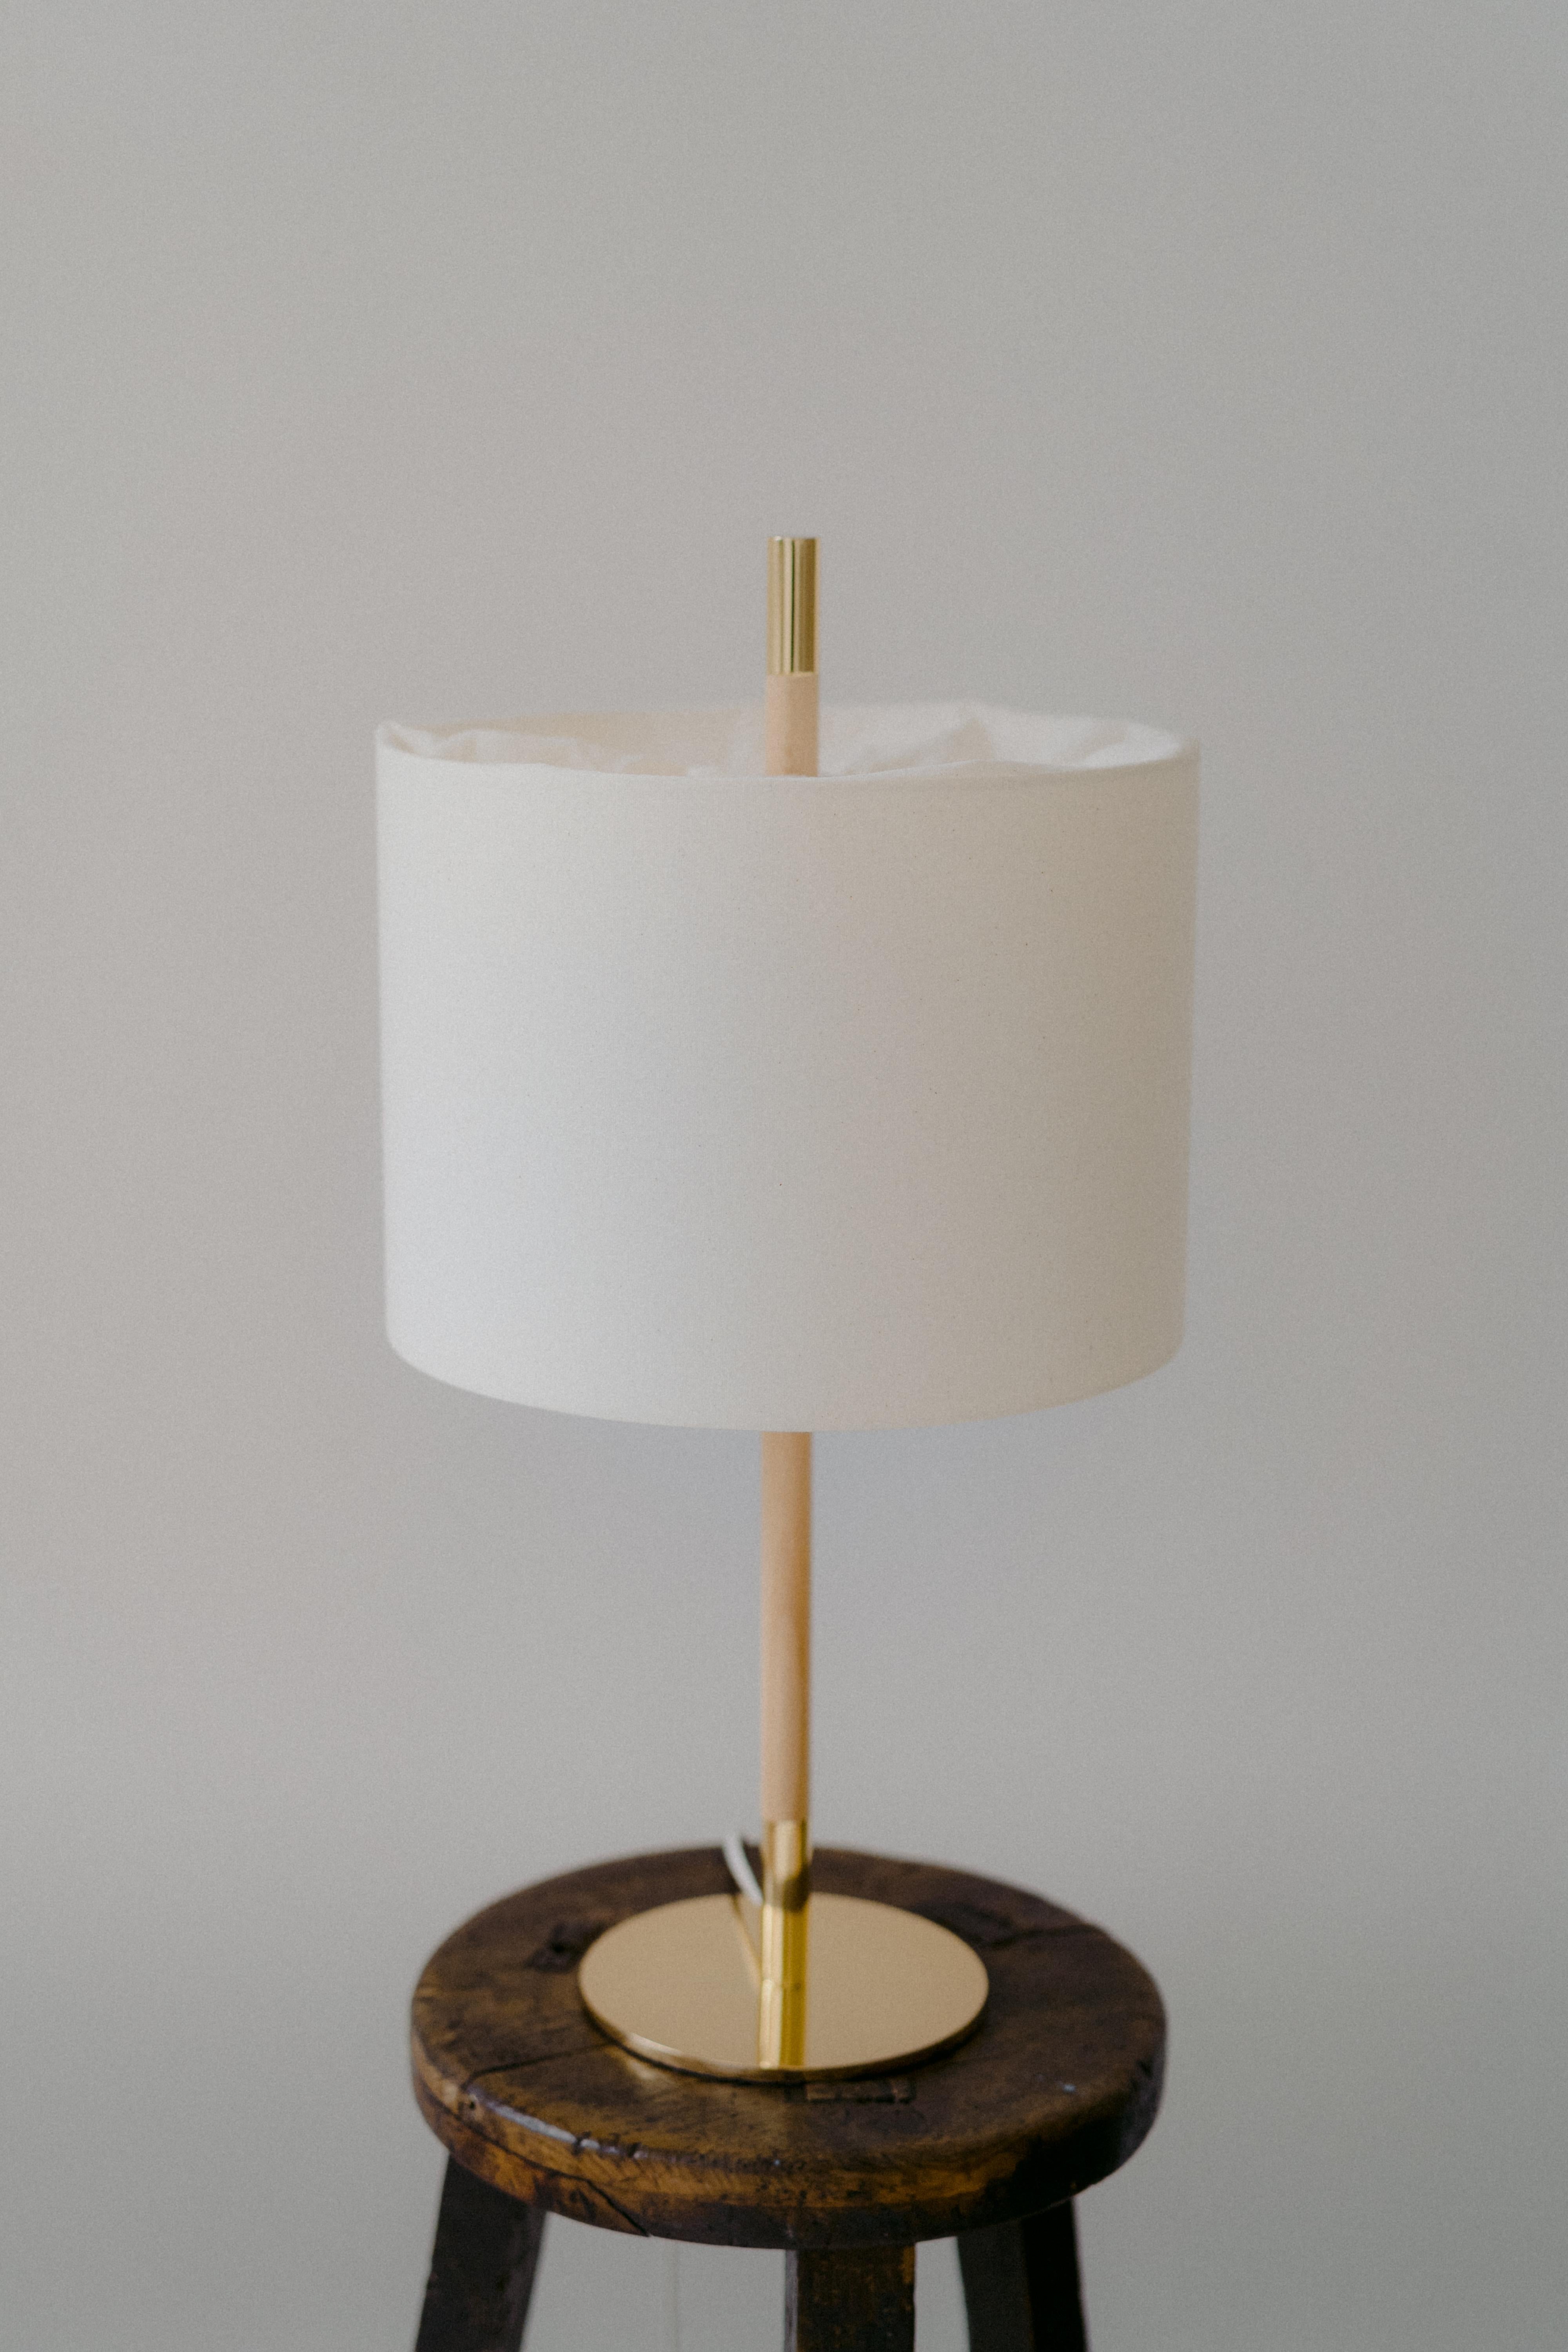 LAMPE DE TABLE AMÀ

Le modèle de lampe Amà propose une variante avec un abat-jour en tissu naturel texturé en blanc.
Au sommet, le tissu se plie pour cacher la source de lumière, créant ainsi un détail unique.
Comme dans la version en rotin, son